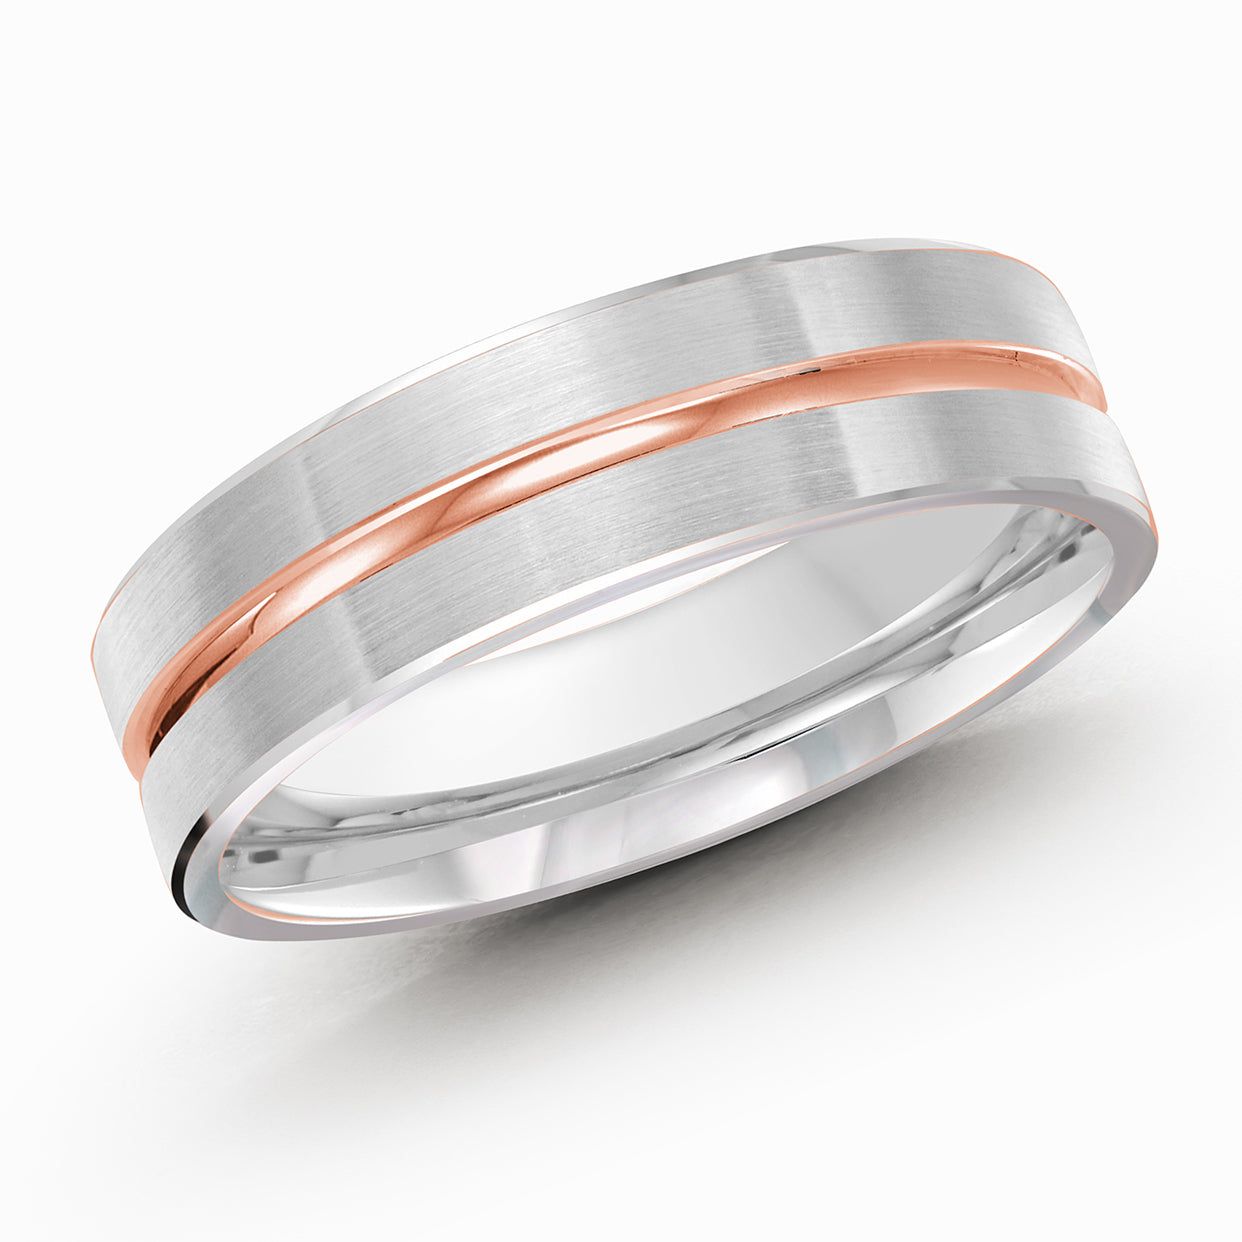 Men's 6mm Two-tone Satin-finish Inlay Wedding Ring